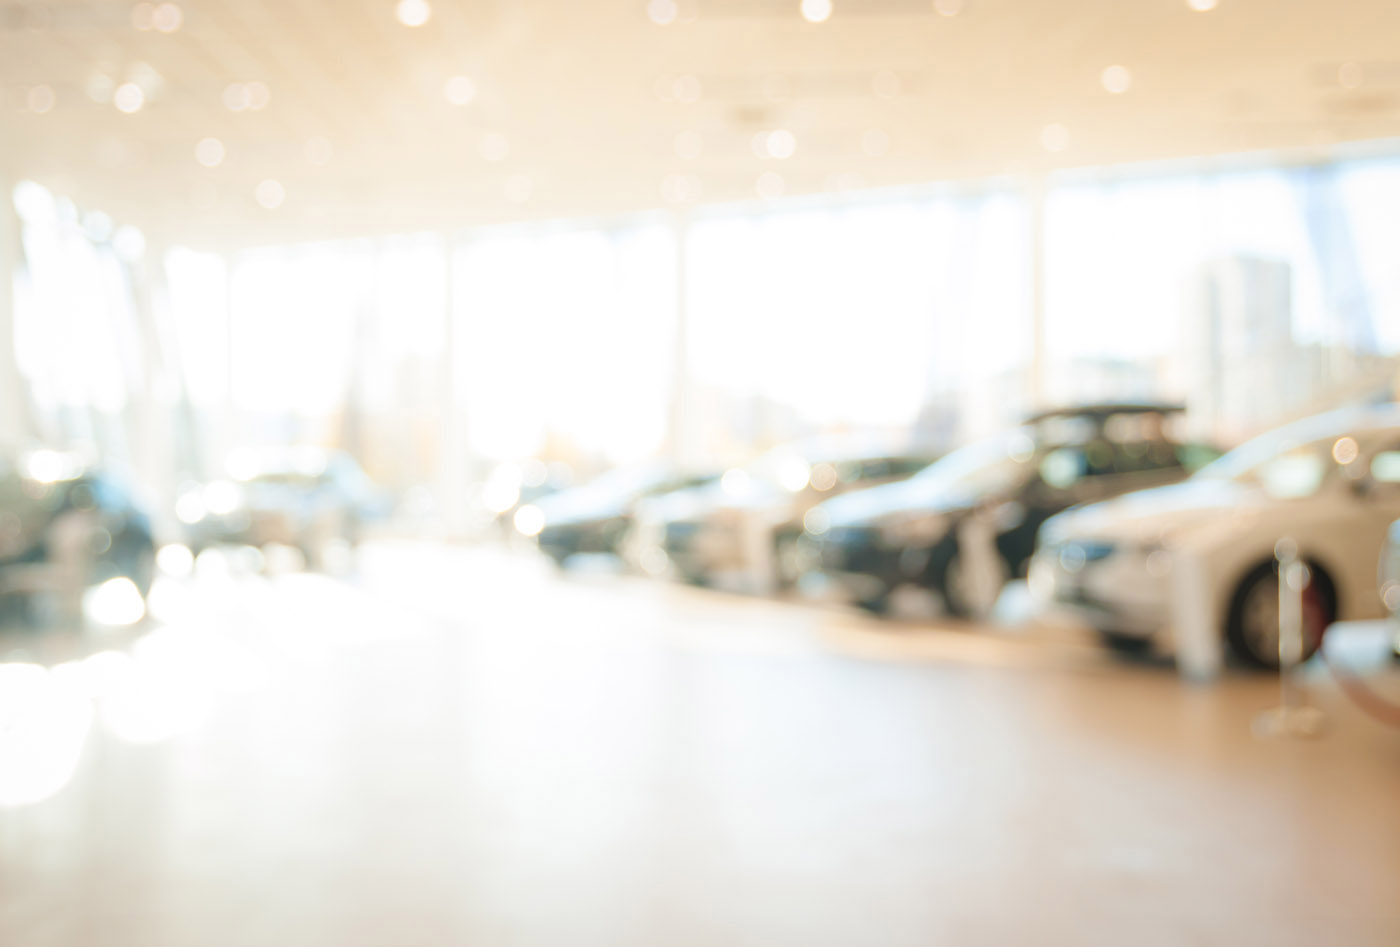 Blurred image of auto showroom